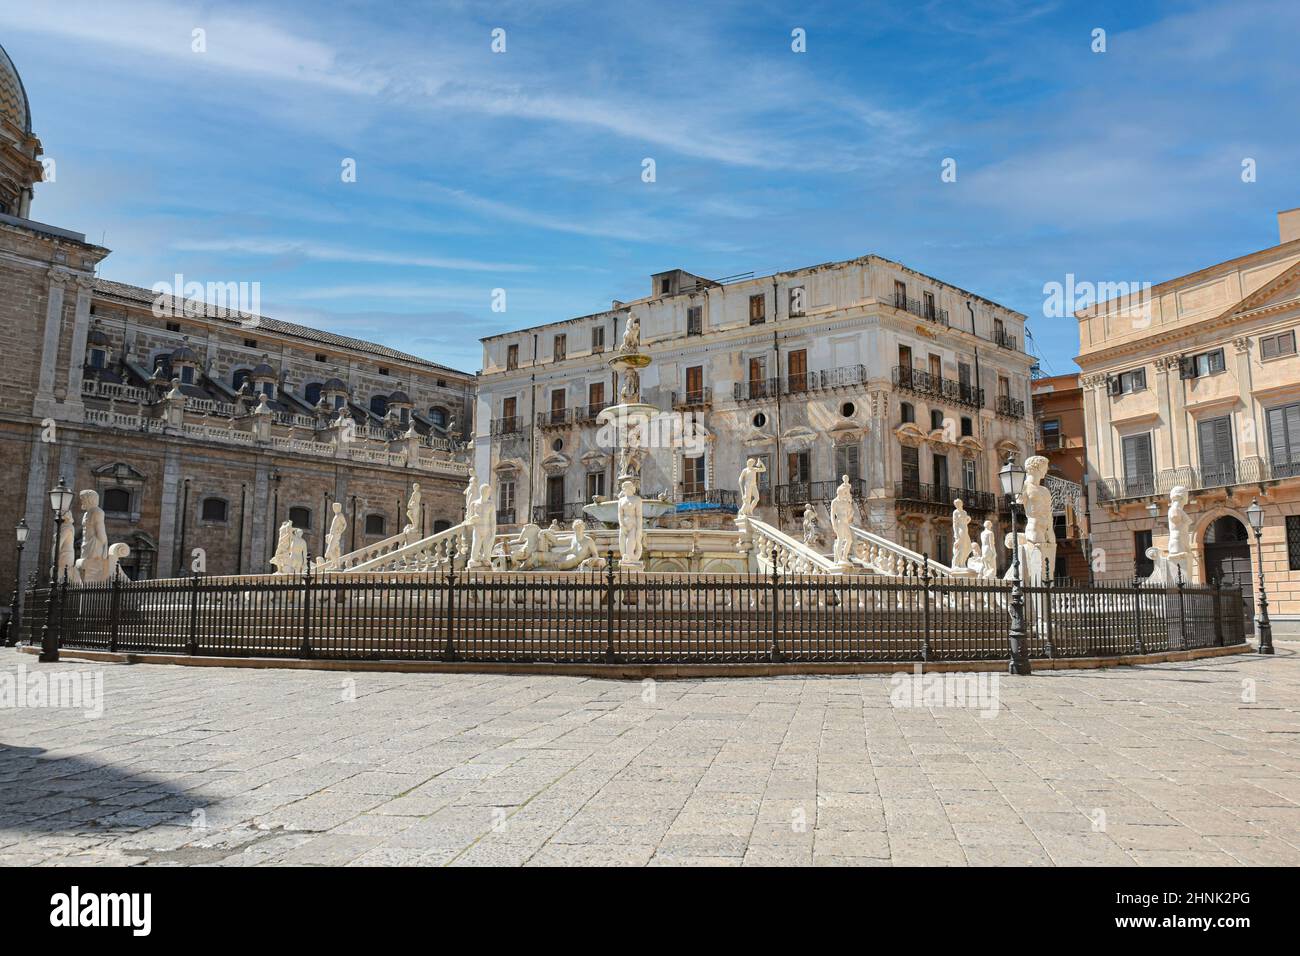 Fontana della vergogna in Palermo. Italy Stock Photo